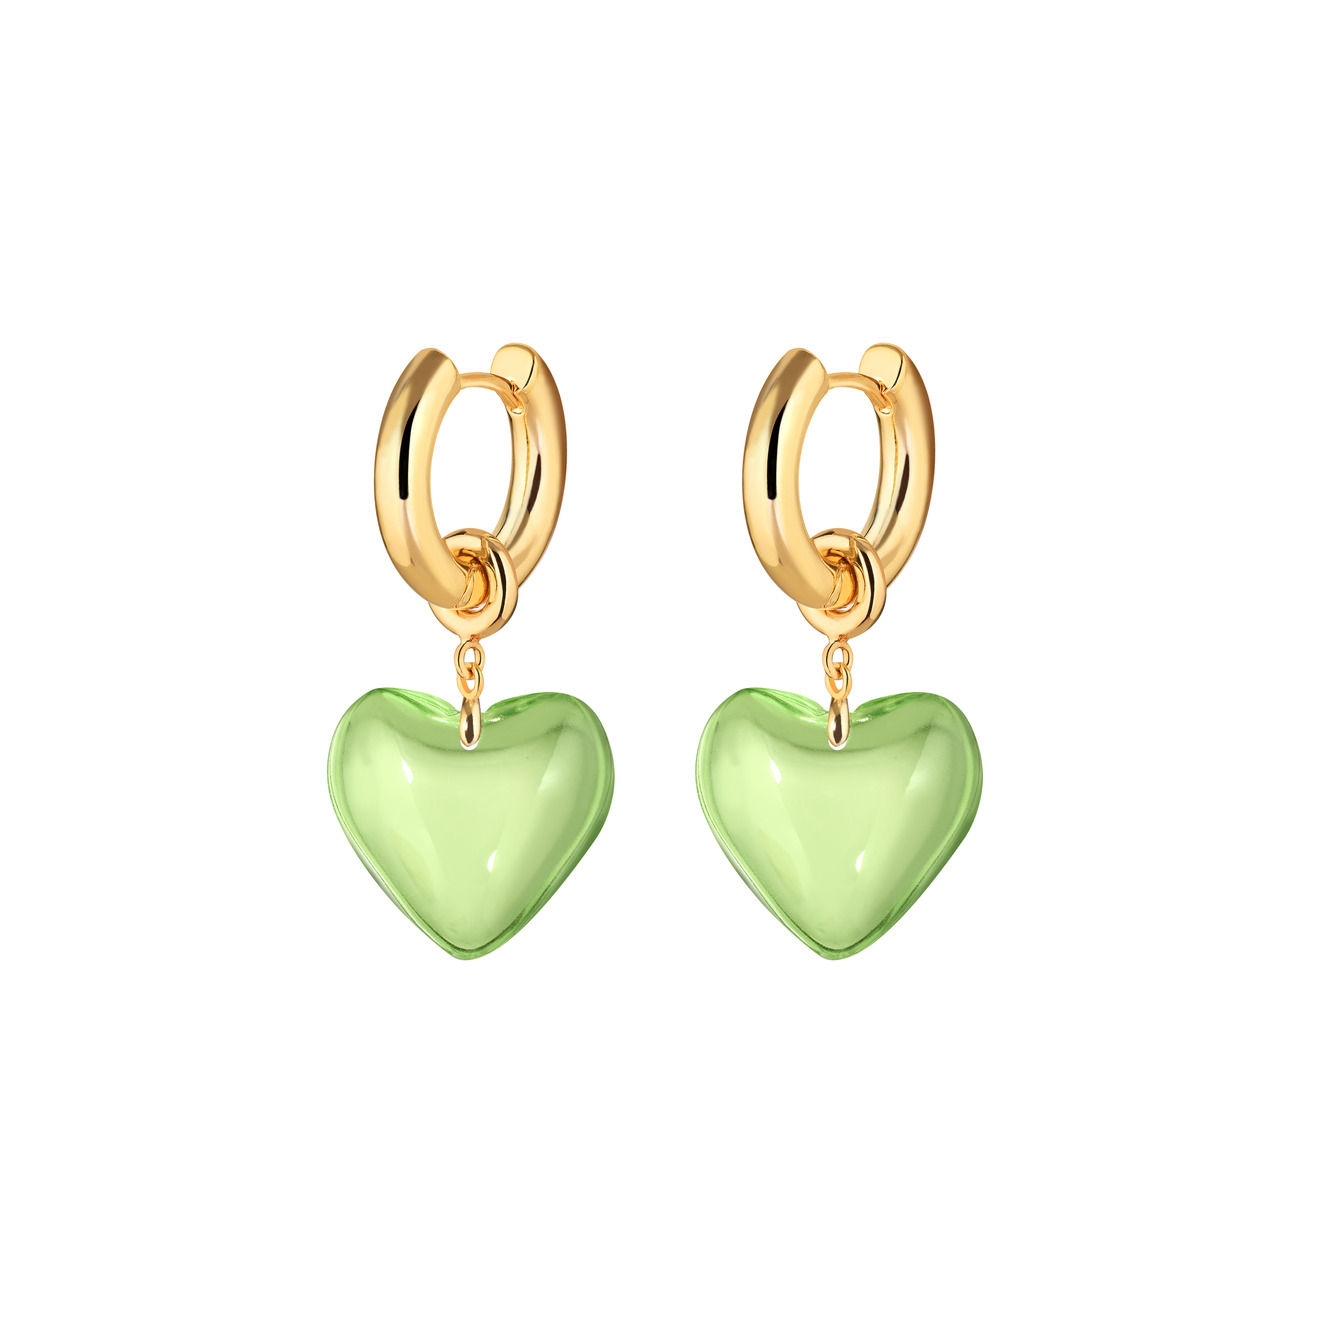 aqua золотистые серьги с розовыми подвесками сердцами Kotlo Studio Золотистые серьги Sweetheart с зелеными сердцами